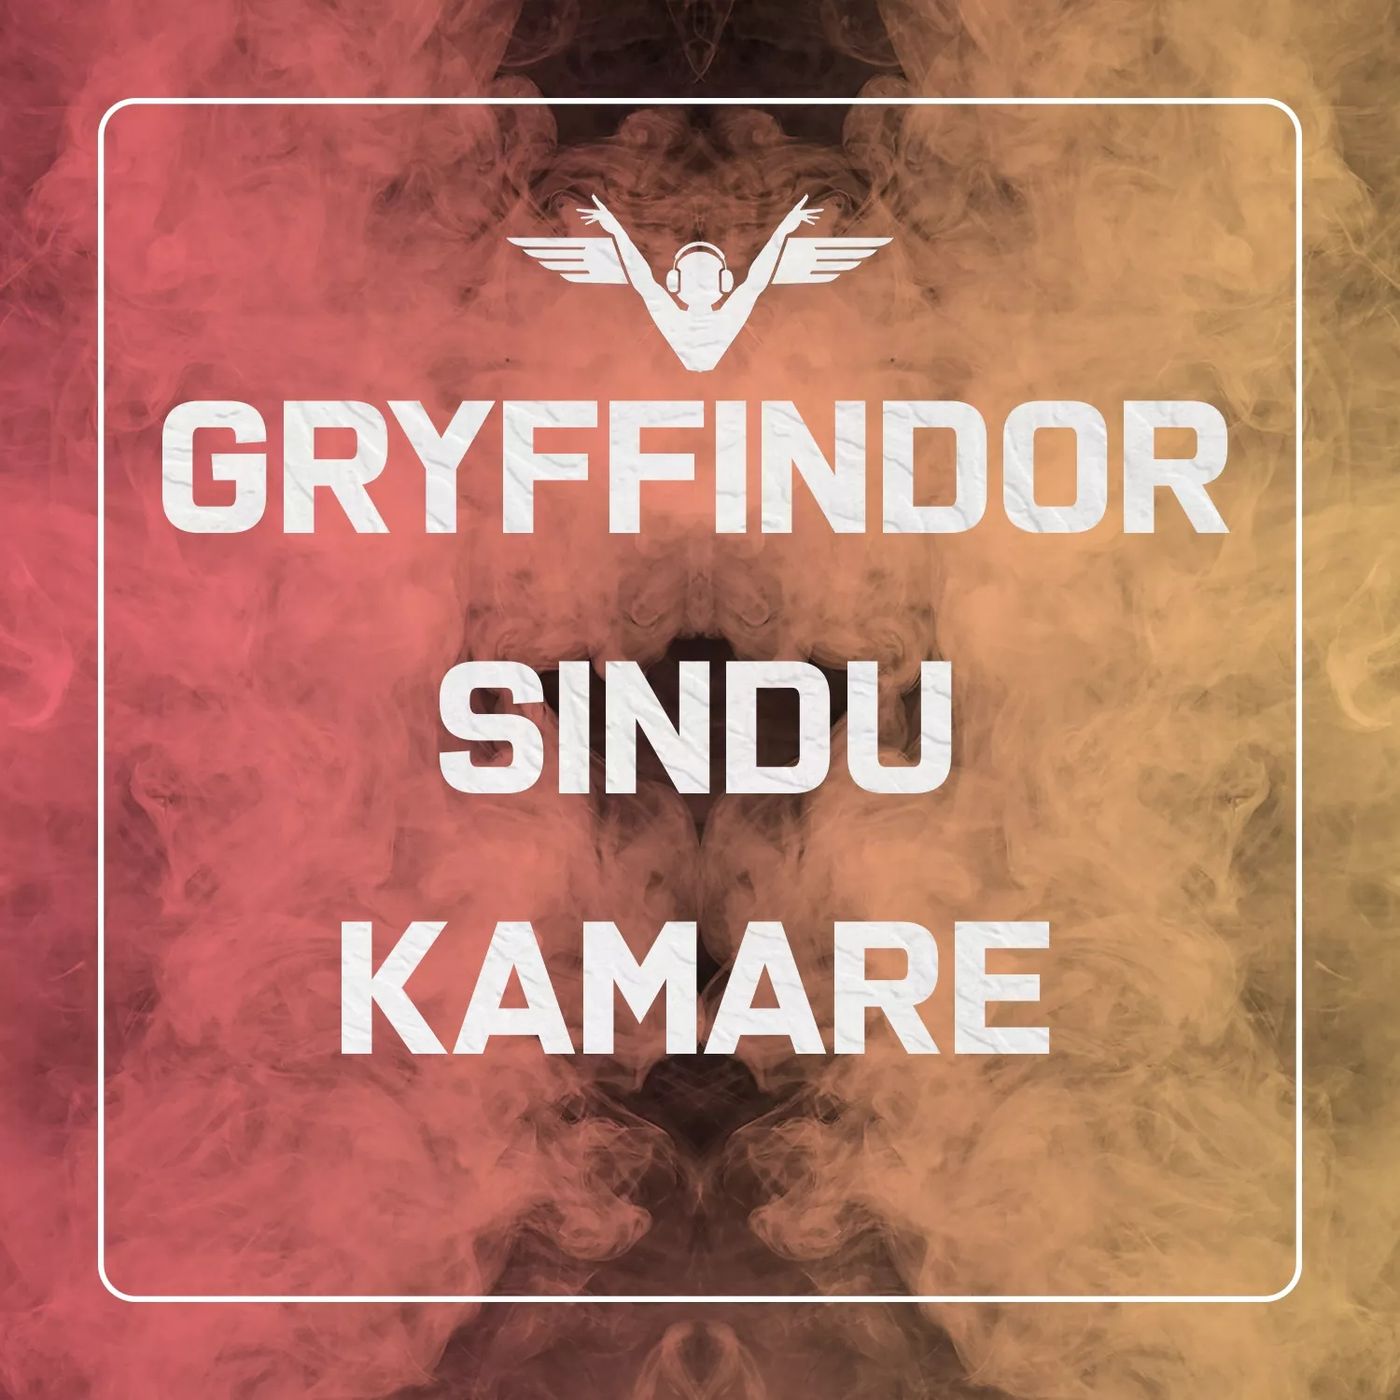 Griffindor Sindu Kamare - Episode 02